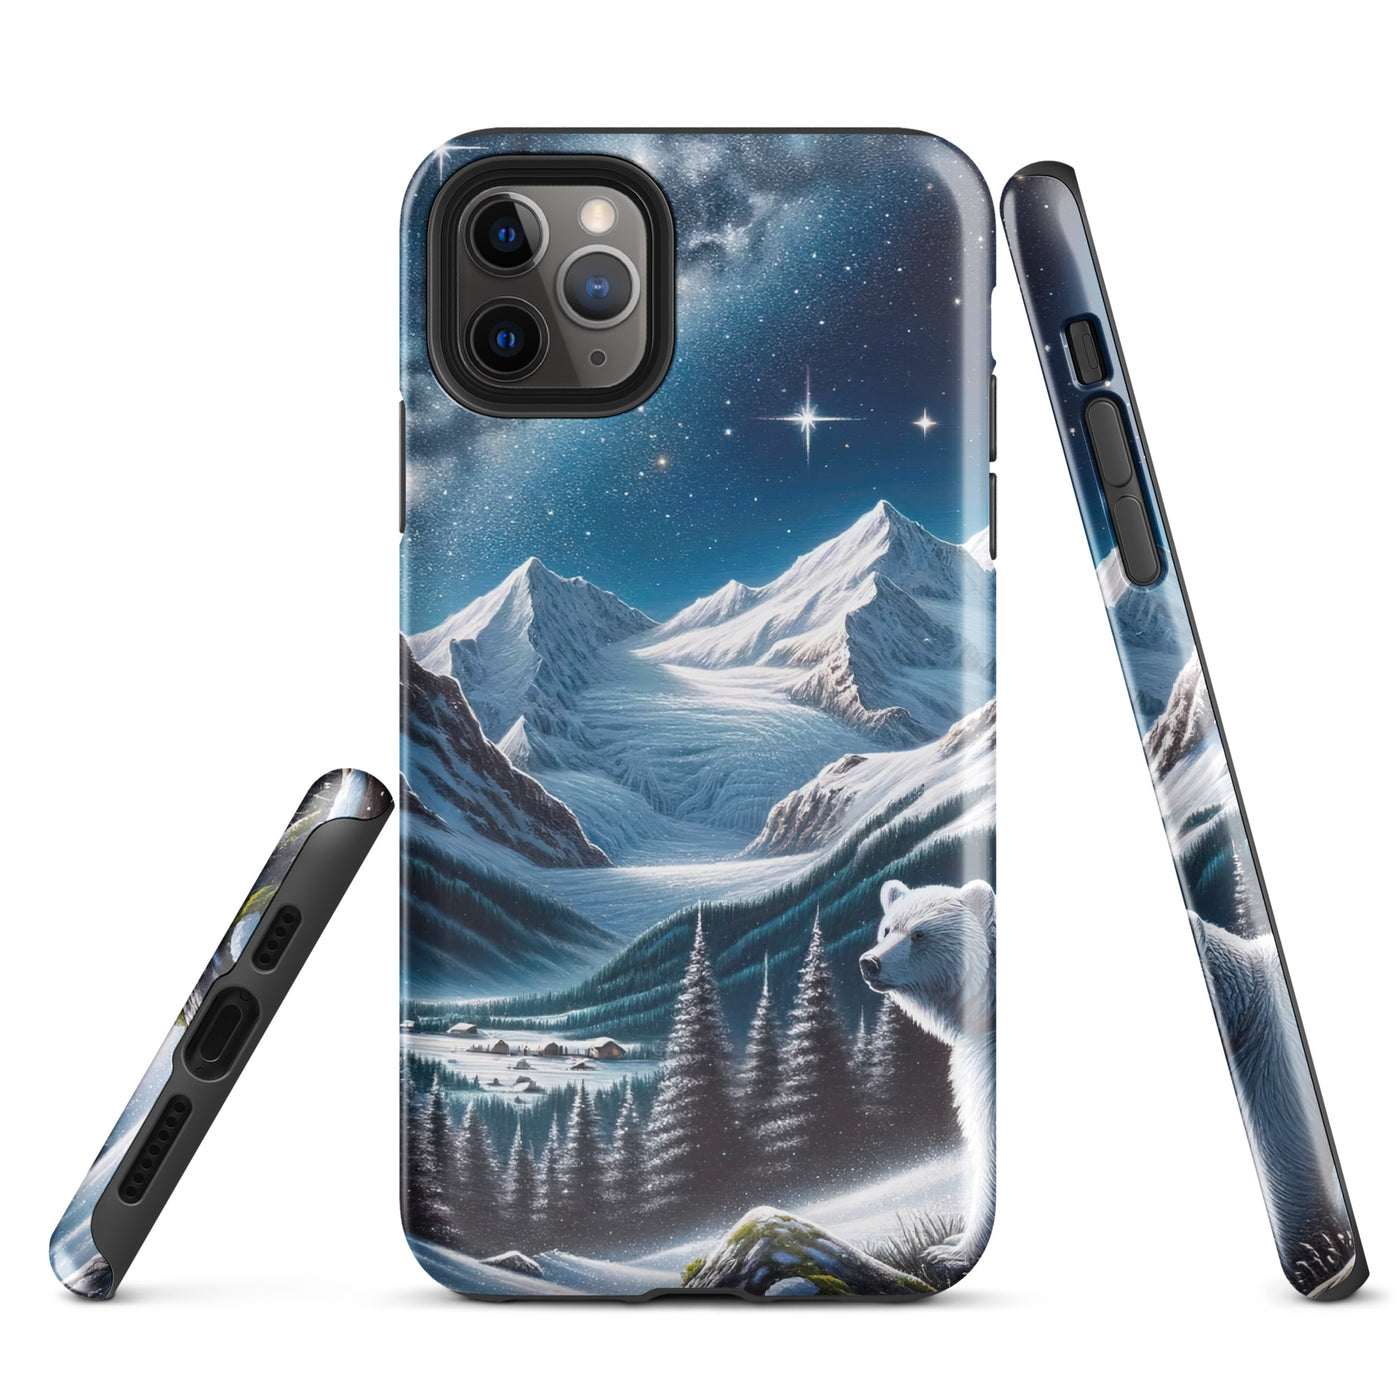 Sternennacht und Eisbär: Acrylgemälde mit Milchstraße, Alpen und schneebedeckte Gipfel - iPhone Schutzhülle (robust) camping xxx yyy zzz iPhone 11 Pro Max